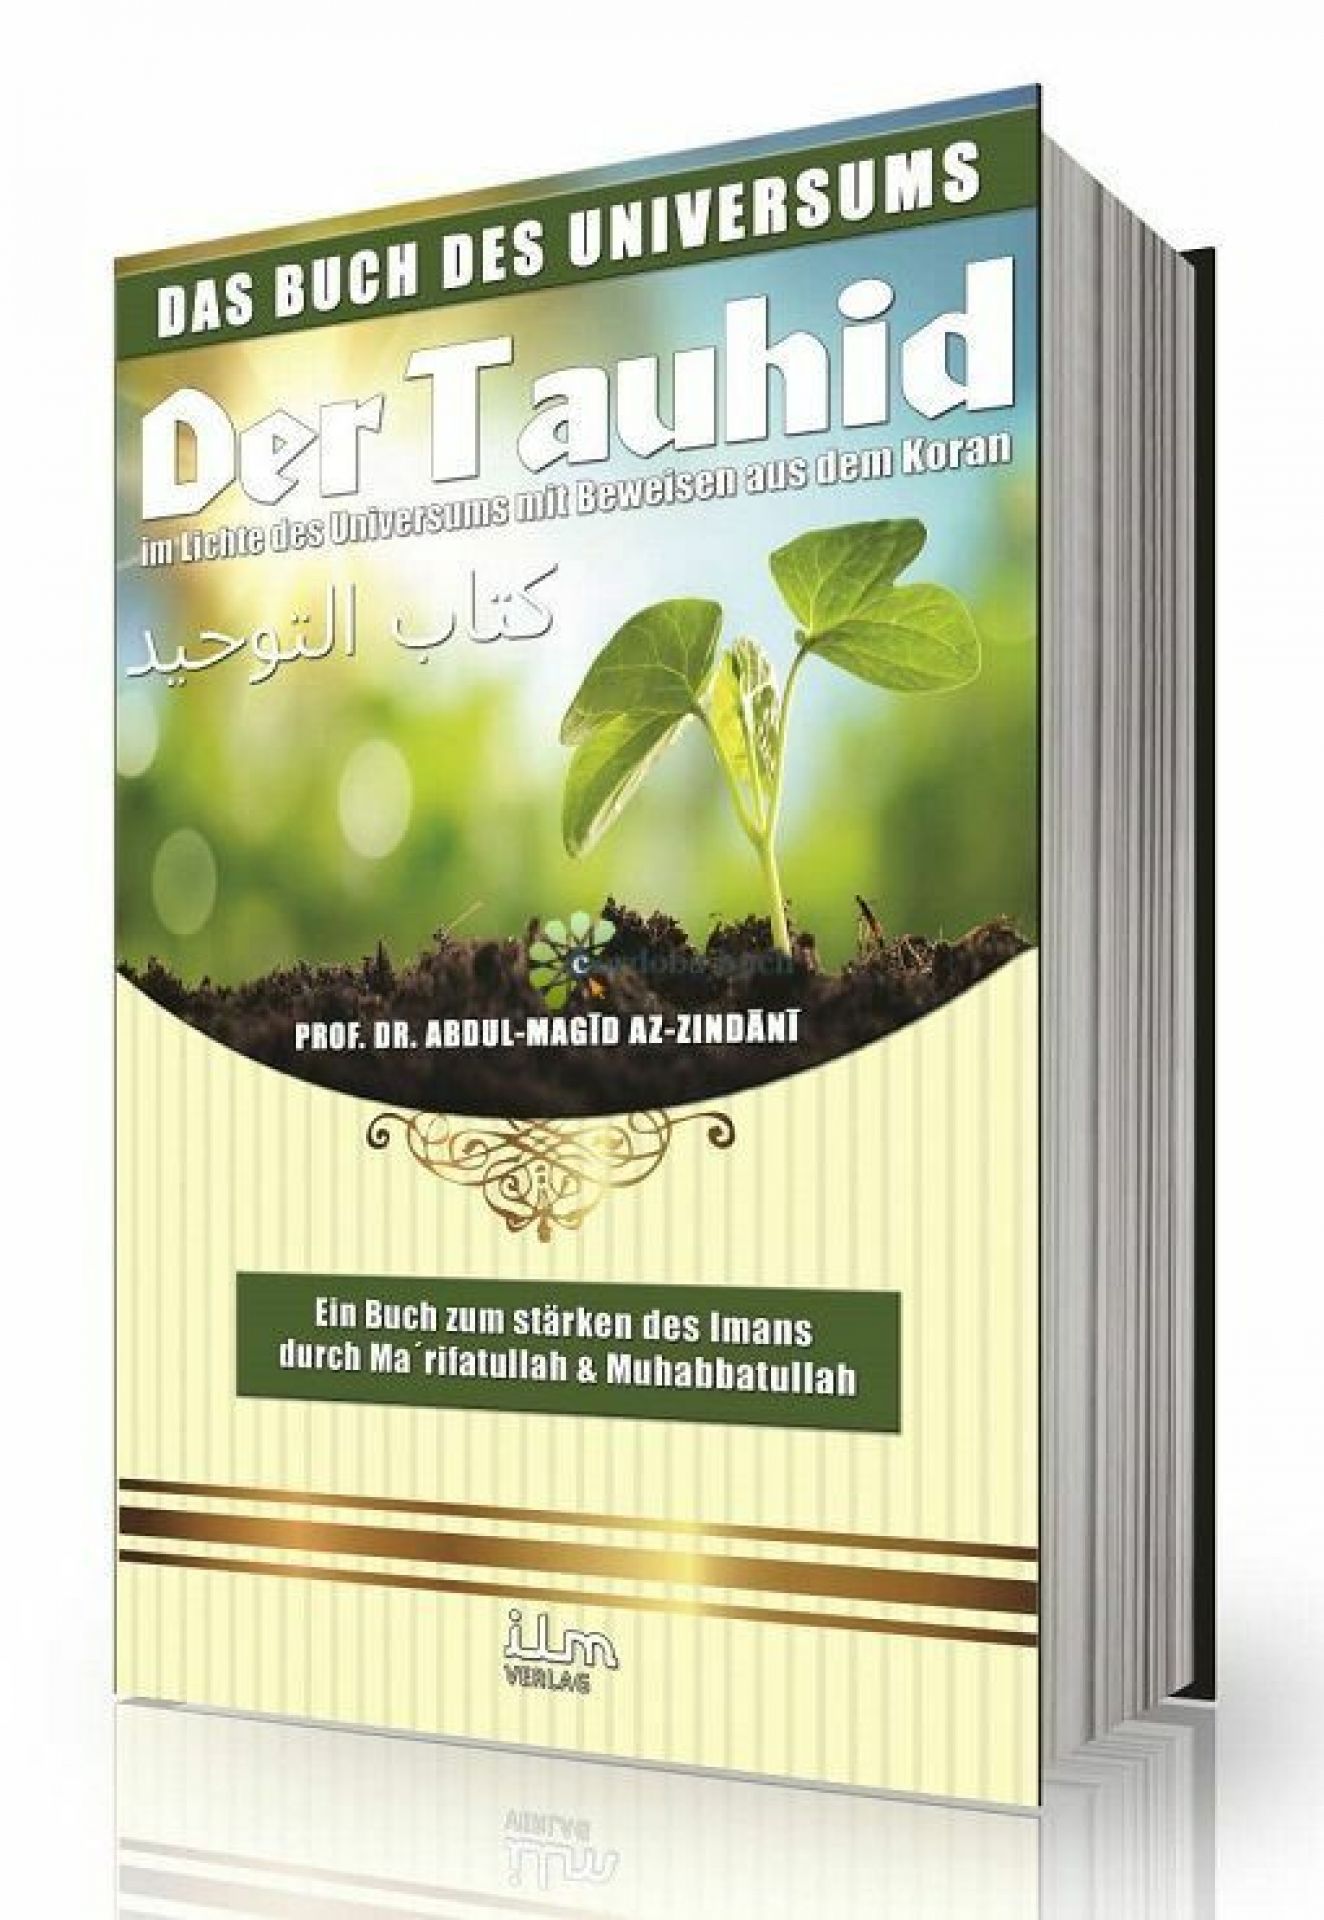 Das Buch Des Universums - Kitab Ut Tauhid Im Lichte Des Universums Mit Beweisen Aus Dem Quran